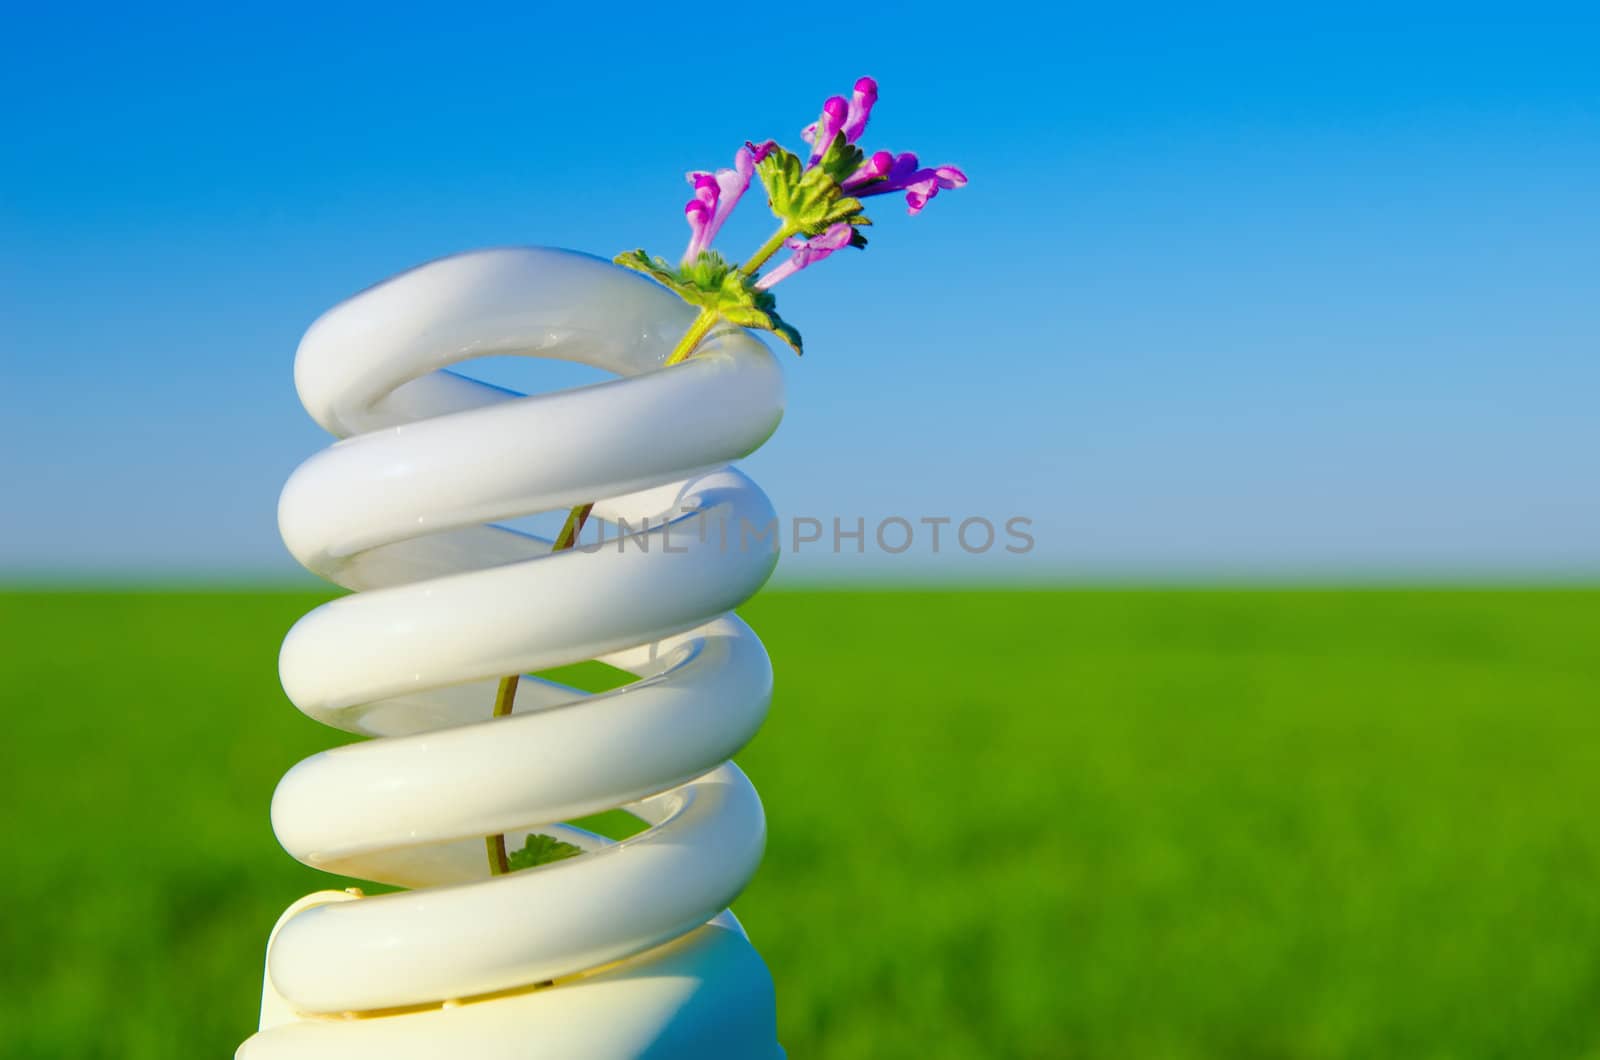 flower in energy saving lamp over field